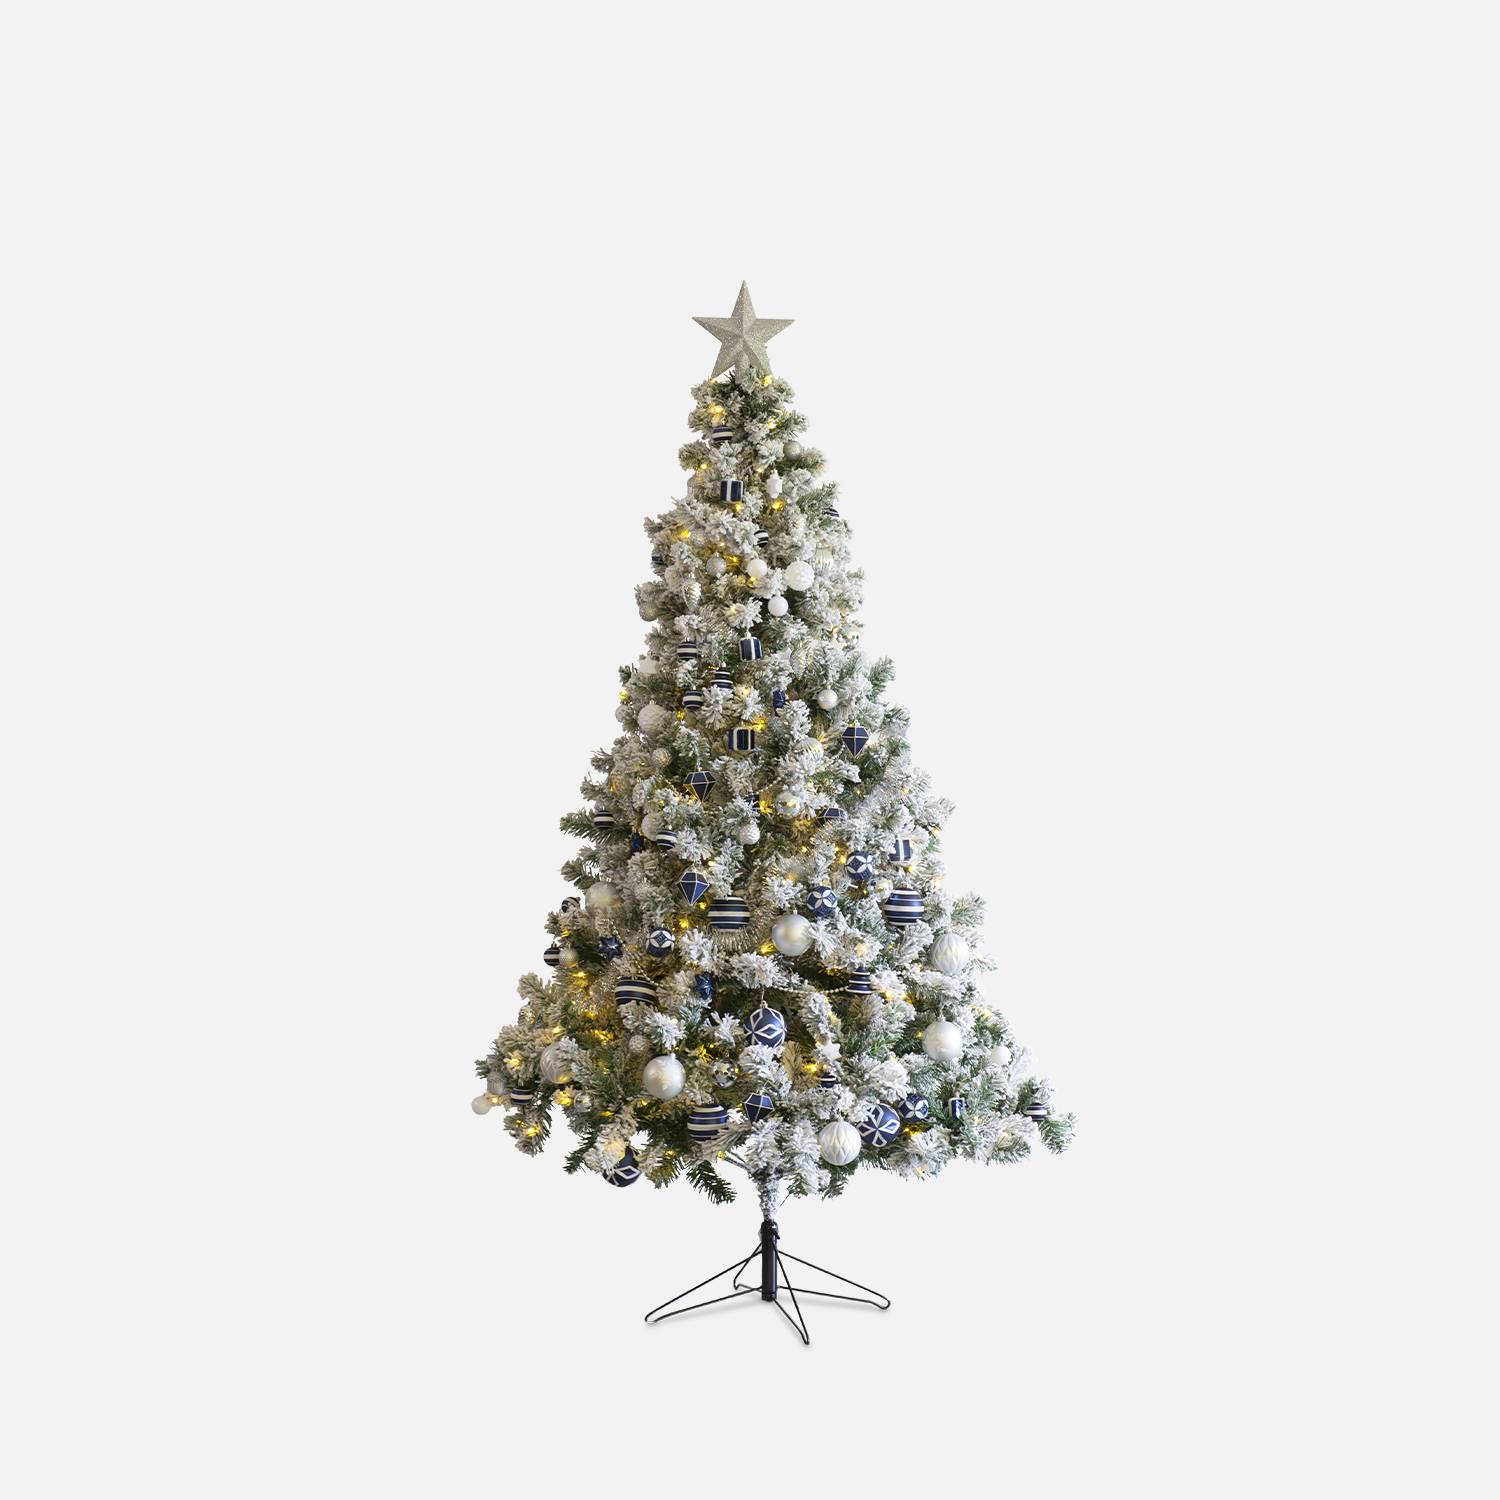 Árvore de Natal artificial coberta de neve com kit de decoração - Montreal 180cm - branca com decorações azuis, prateadas e brancas Photo7